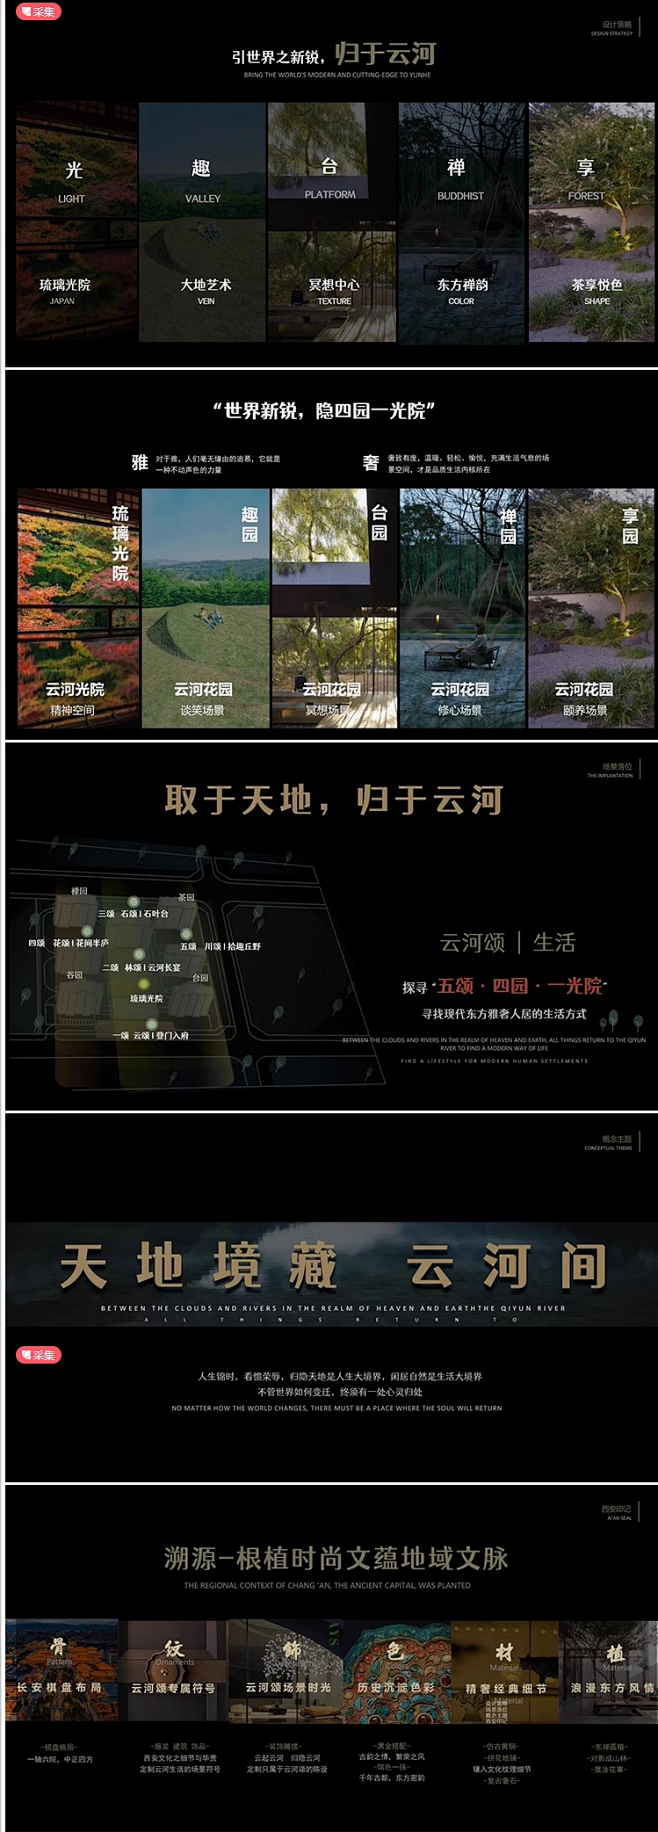 2023龙湖高端大区景观方案文本暗黑排版...